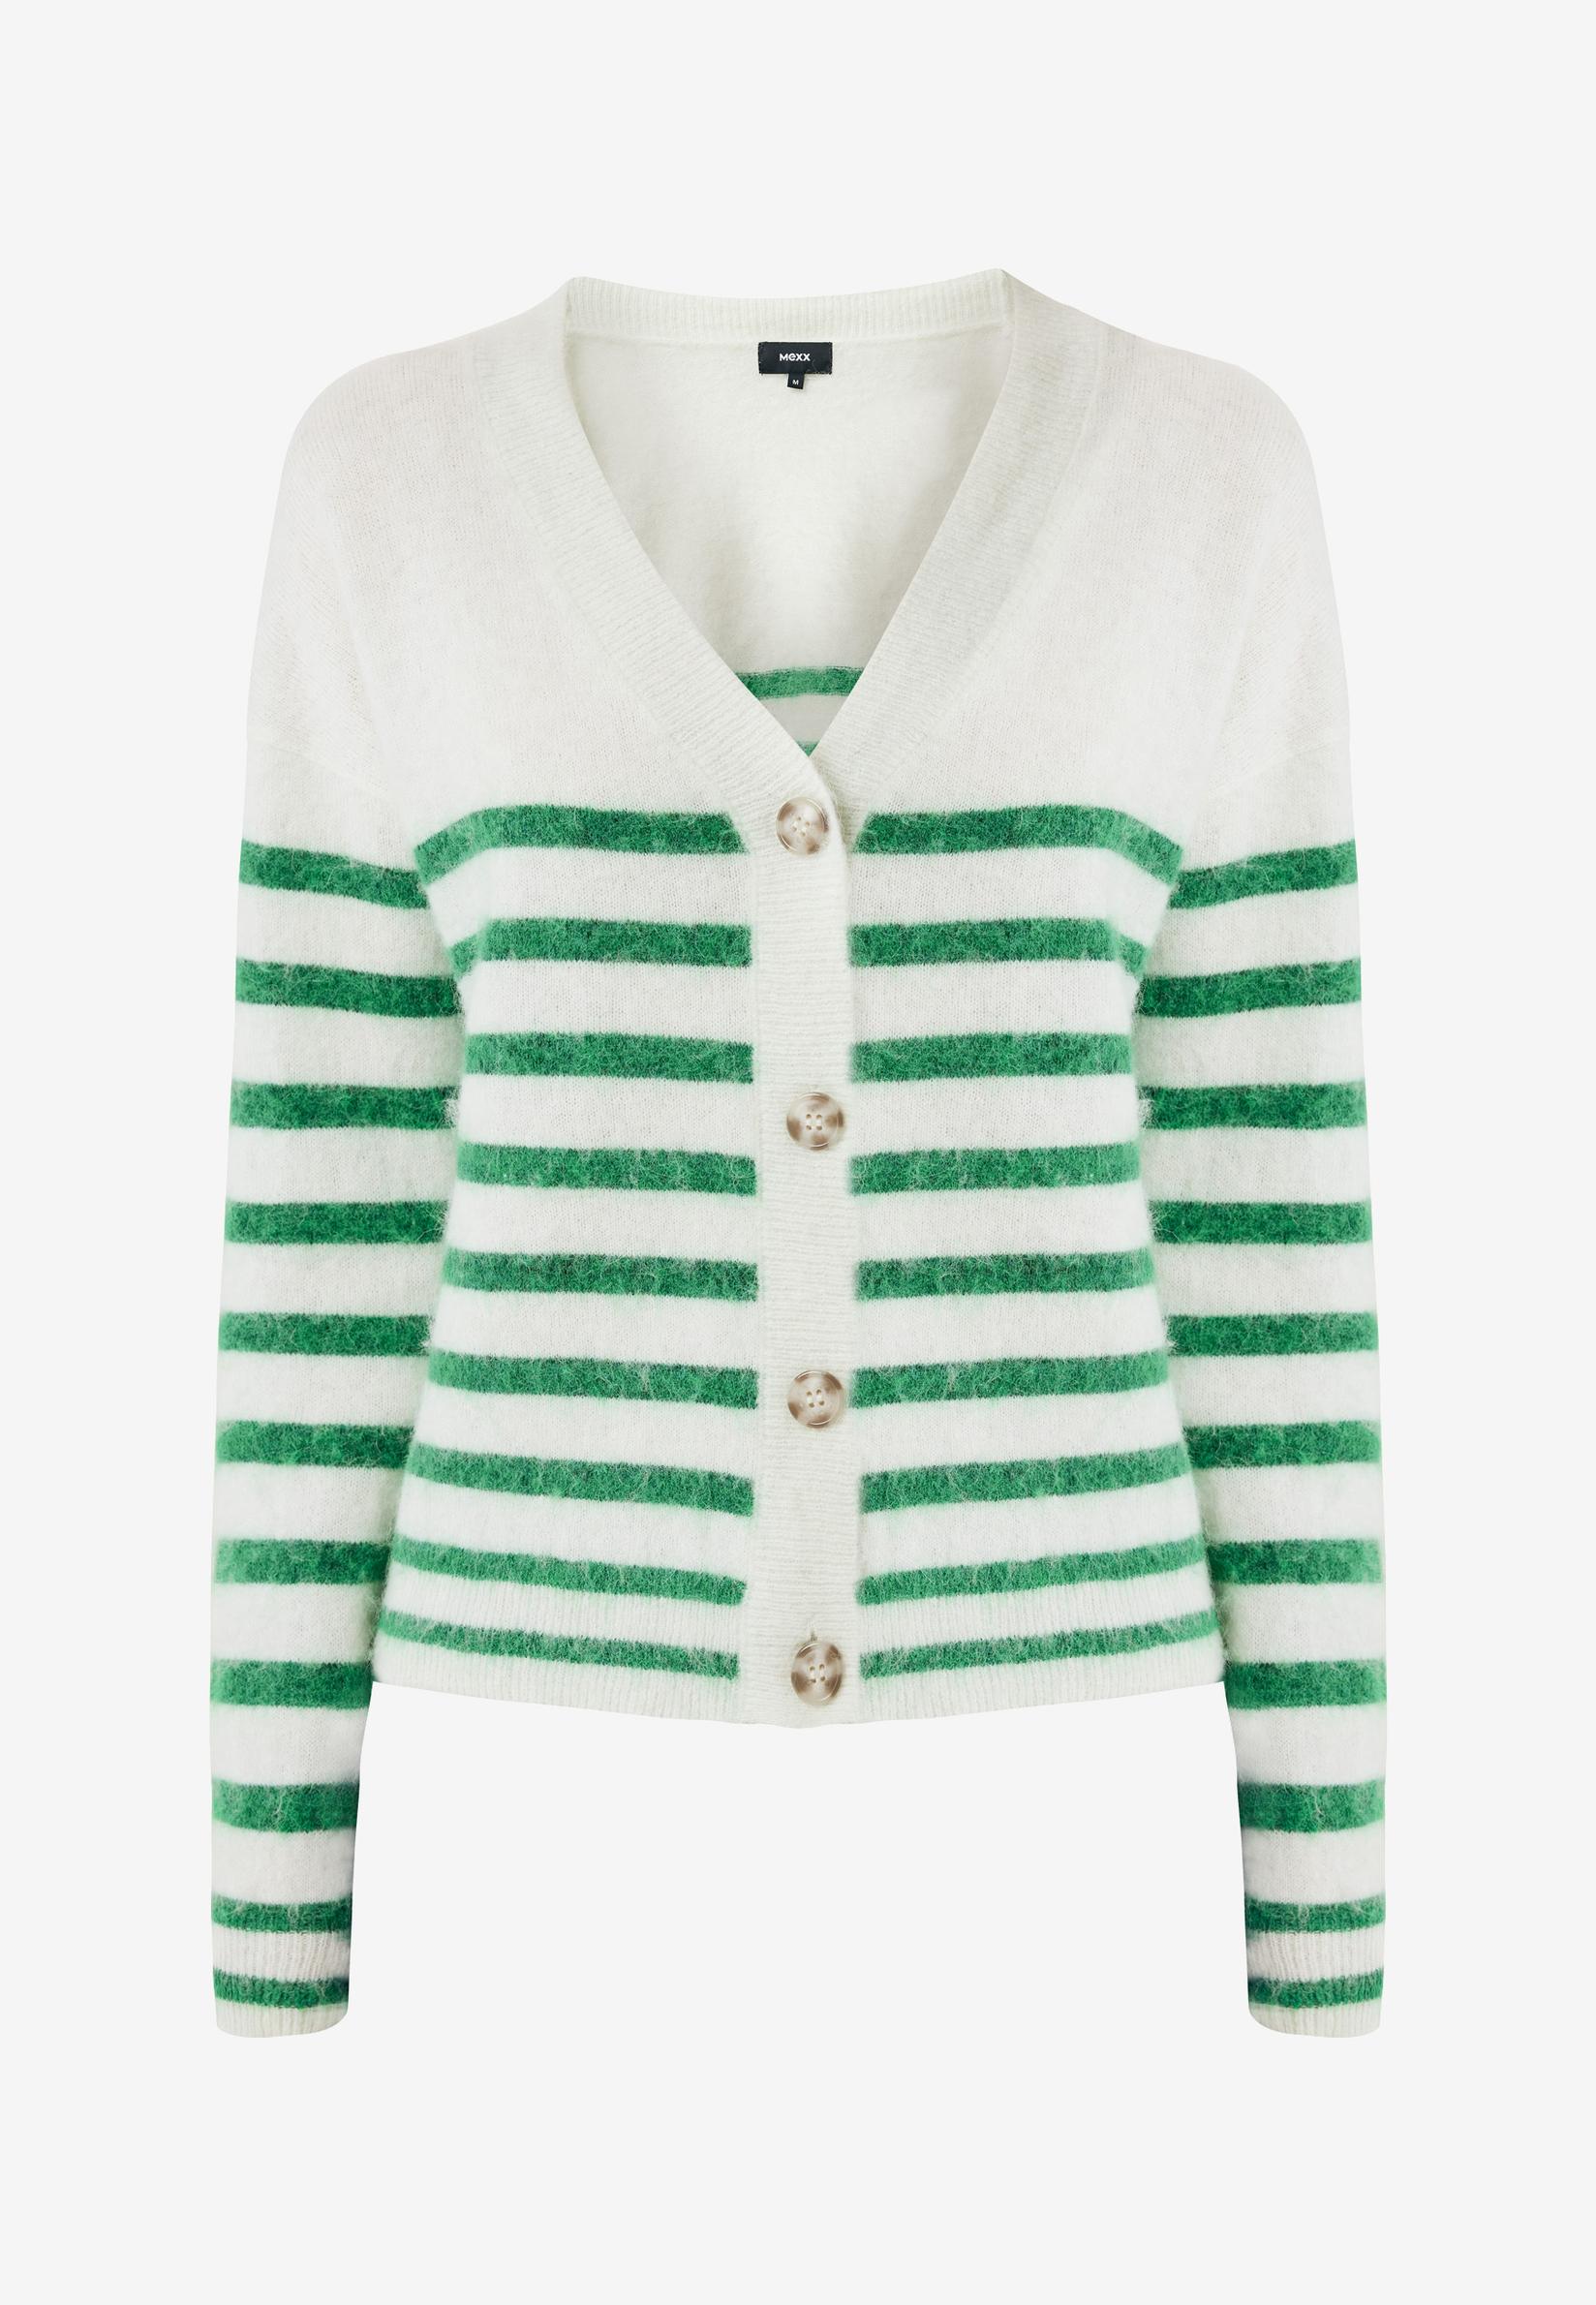 Selected image for MEXX Ženski džemper na pruge zeleno-beli